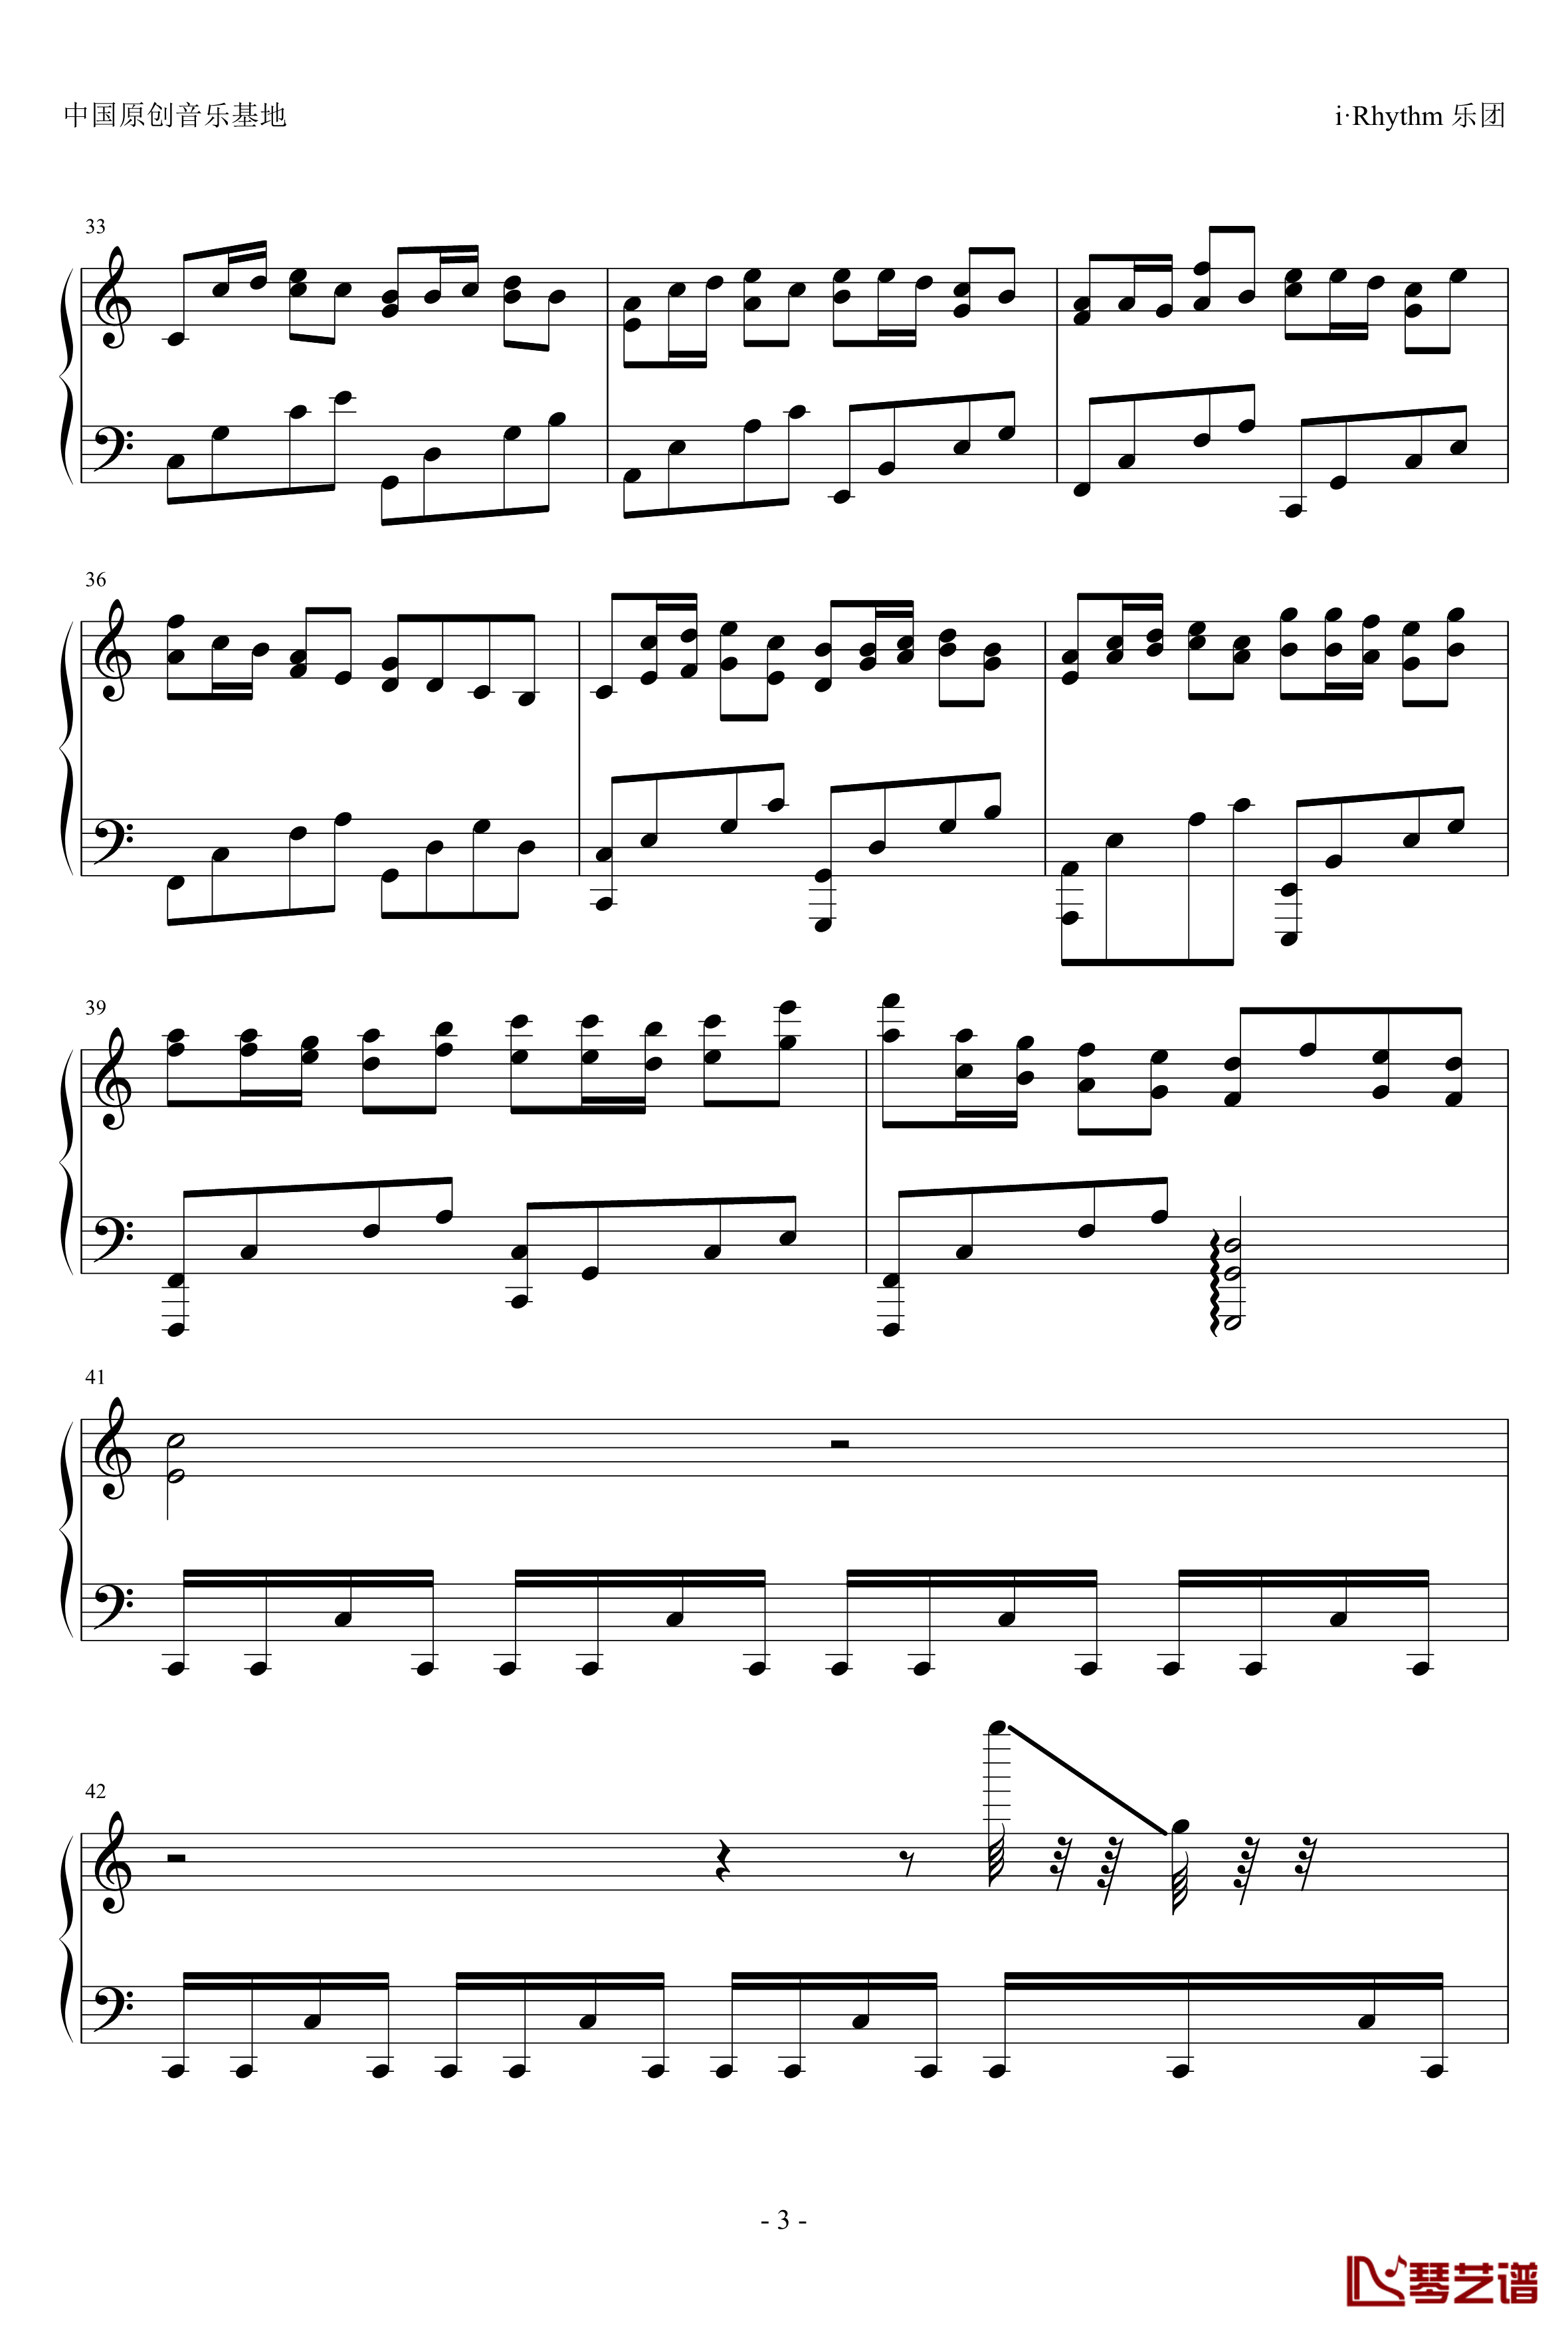 卡农钢琴谱-疯狂版-帕赫贝尔-Pachelbel3